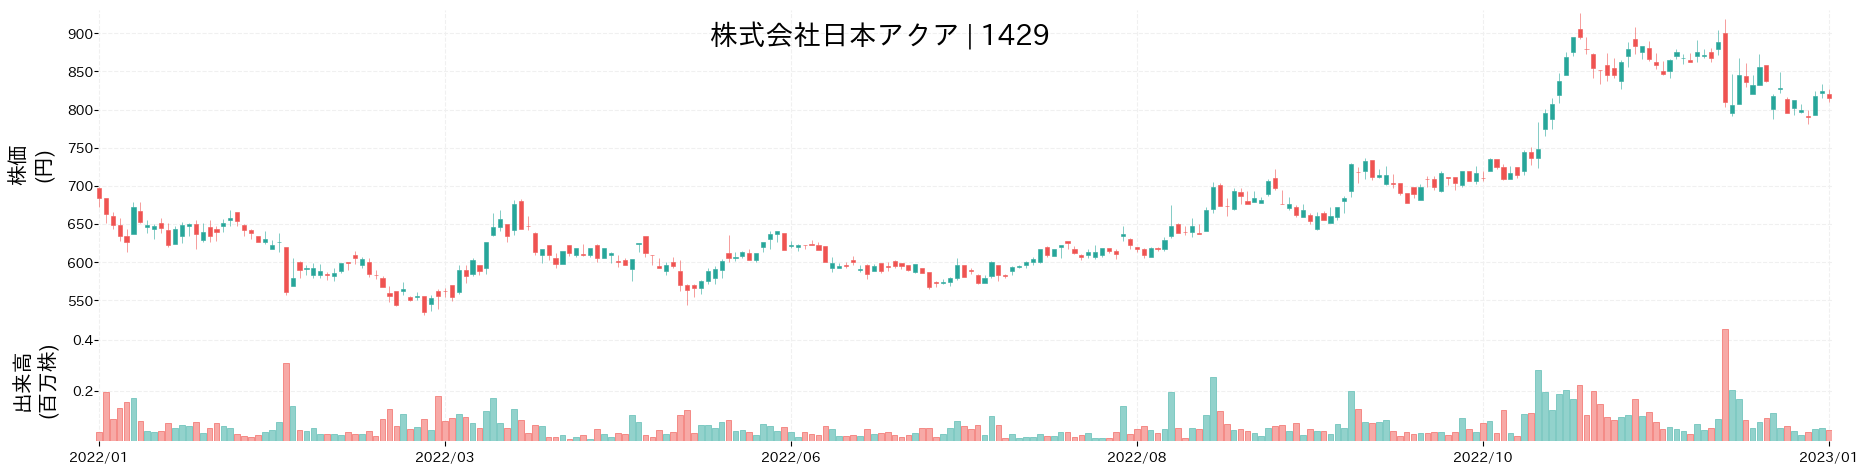 日本アクアの株価推移(2022)